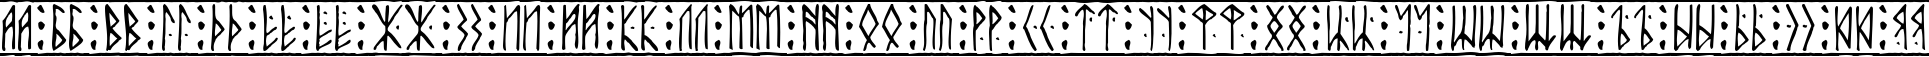 Пример написания русского алфавита шрифтом Runic